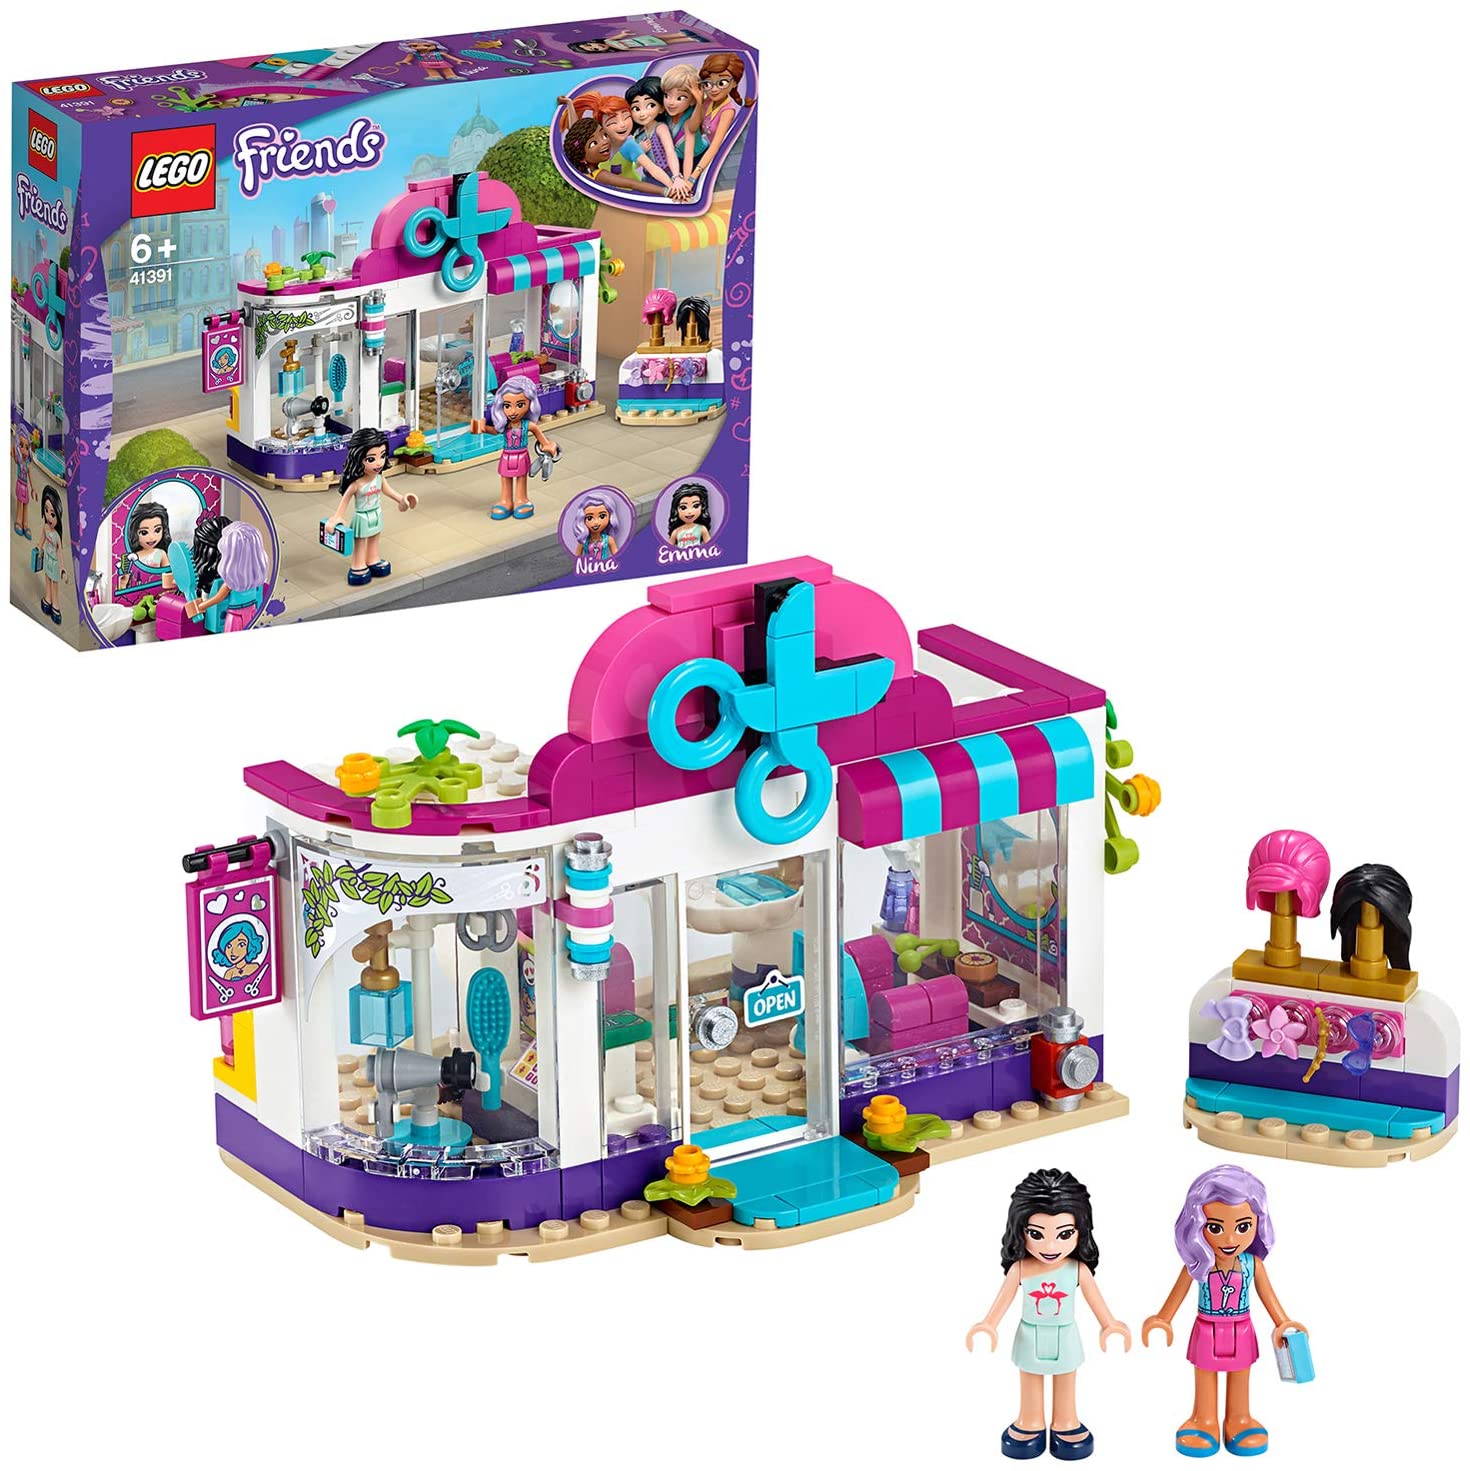 LEGO Friends Il Salone di Bellezza di Heartlake City, Set di Costruzioni Ricco di Dettagli per Bambine 6+ Anni, con Due Mini-Doll di Emma e Nina e Tanti Accessori, 41391